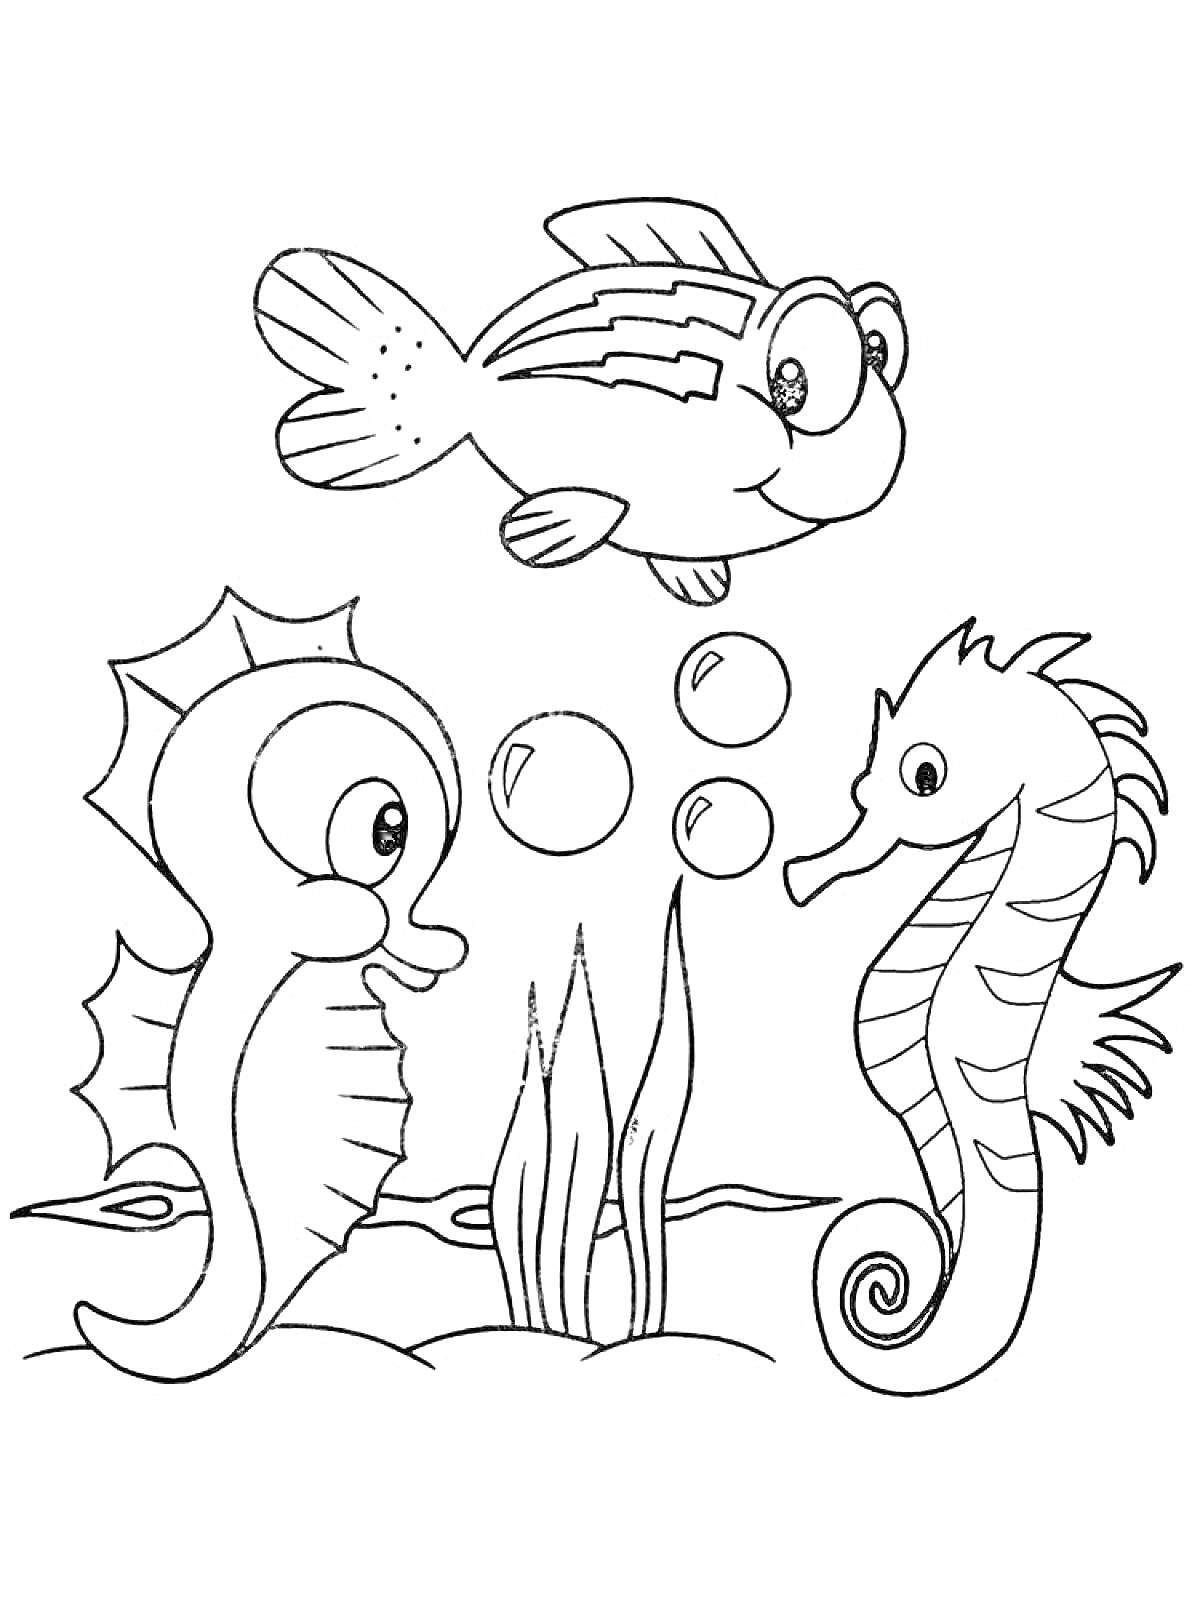 Раскраска Морской конек и рыбка с пузырями и водорослями